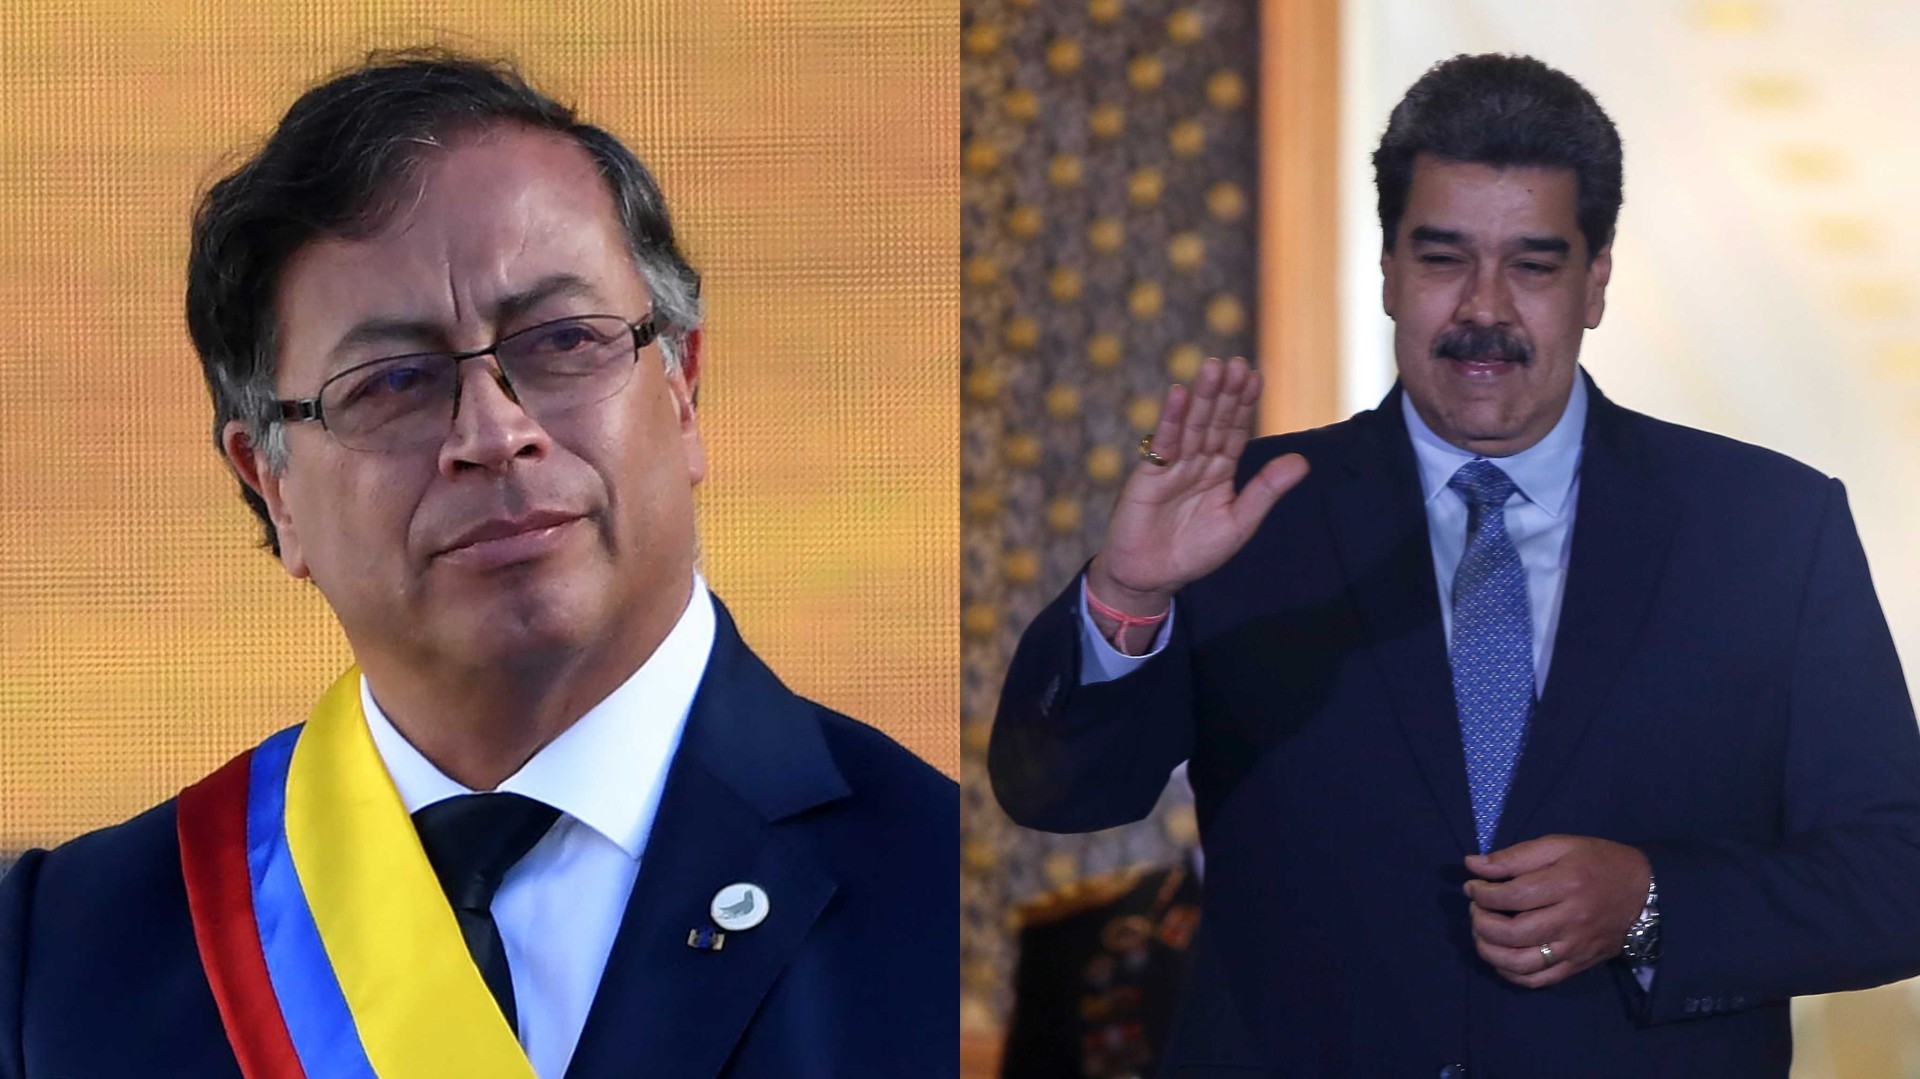 Quello che dovresti sapere sull’incontro tra i presidenti di Colombia e Venezuela